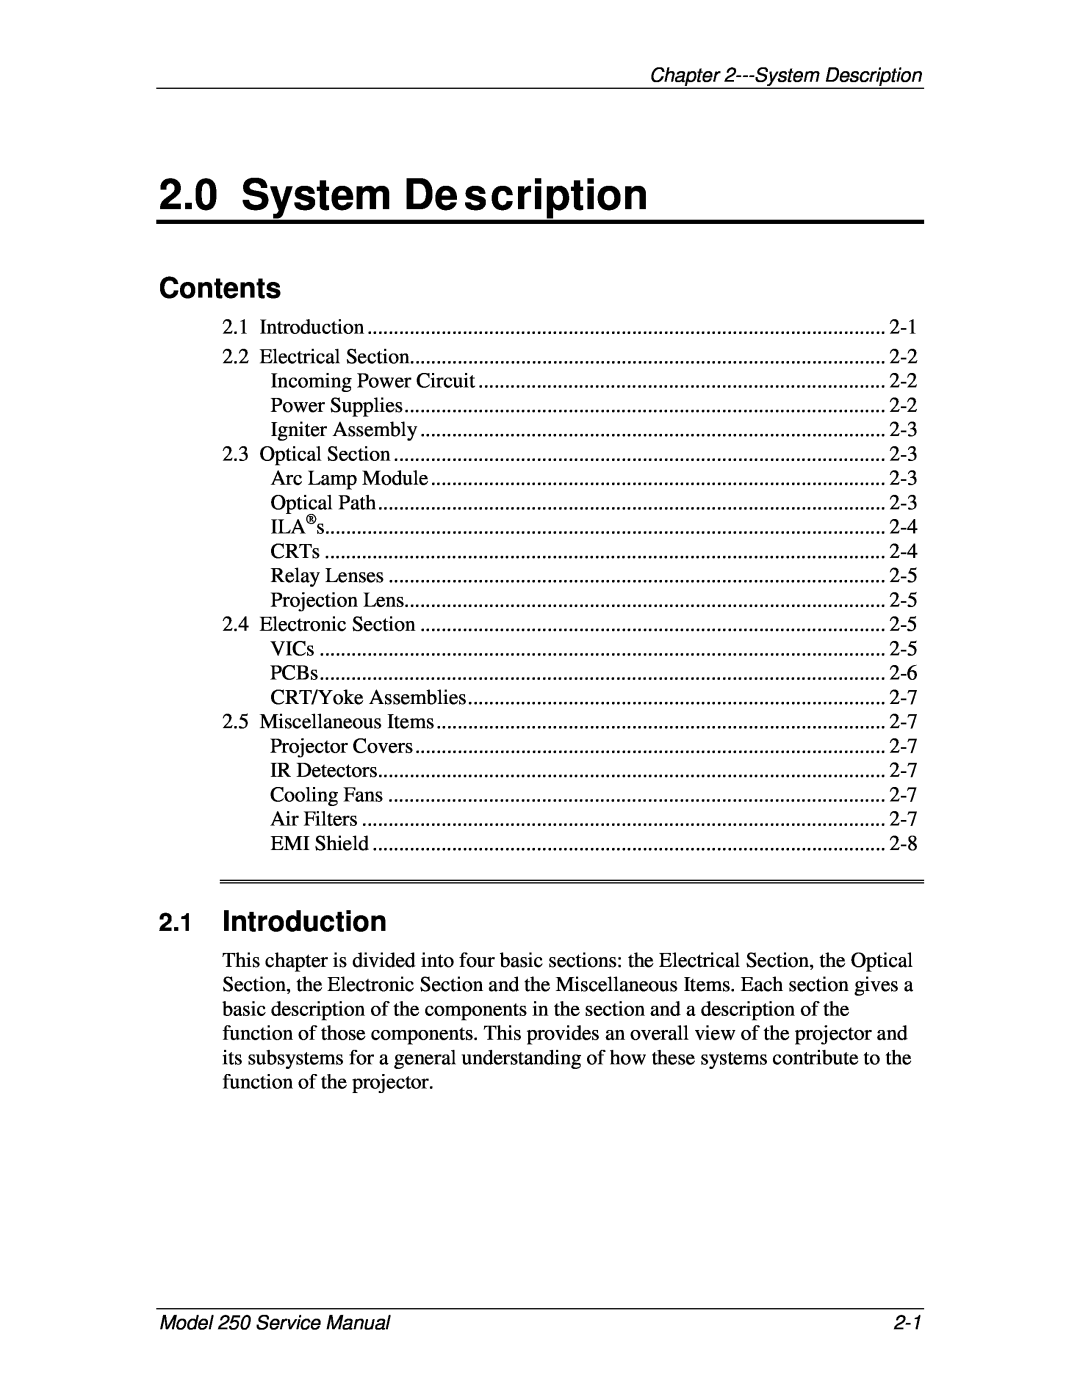 JVC 250 service manual System De scription, Contents, Introduction 